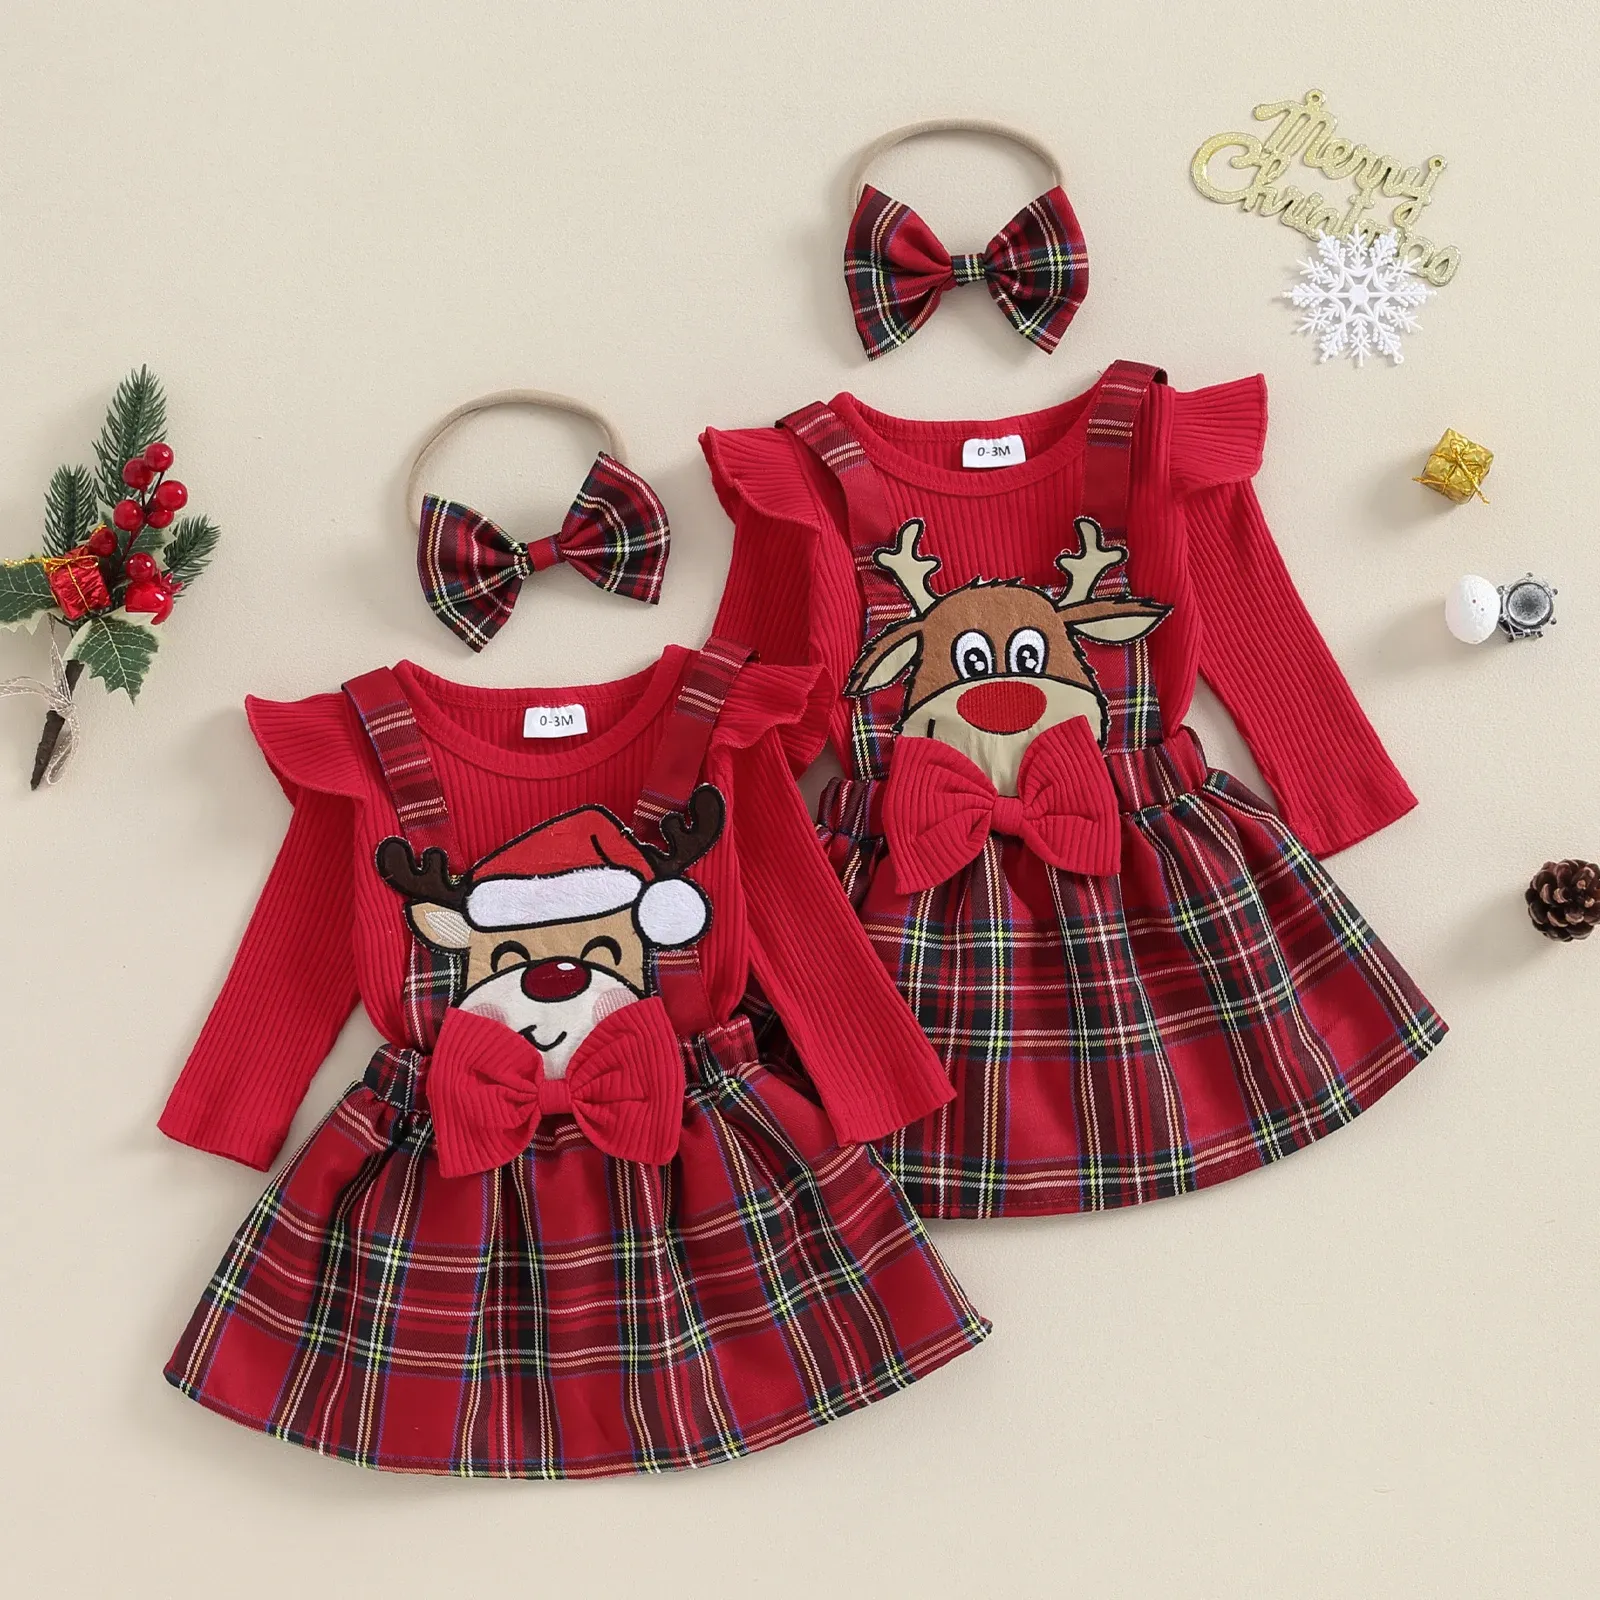 Kleider mababy 018M Weihnachten Neugeborenen Kleinkind Baby Mädchen Kleidung Sets Strick Strampler Deer Kuh Plaid Röcke Outfit Weihnachten Kostüme D05